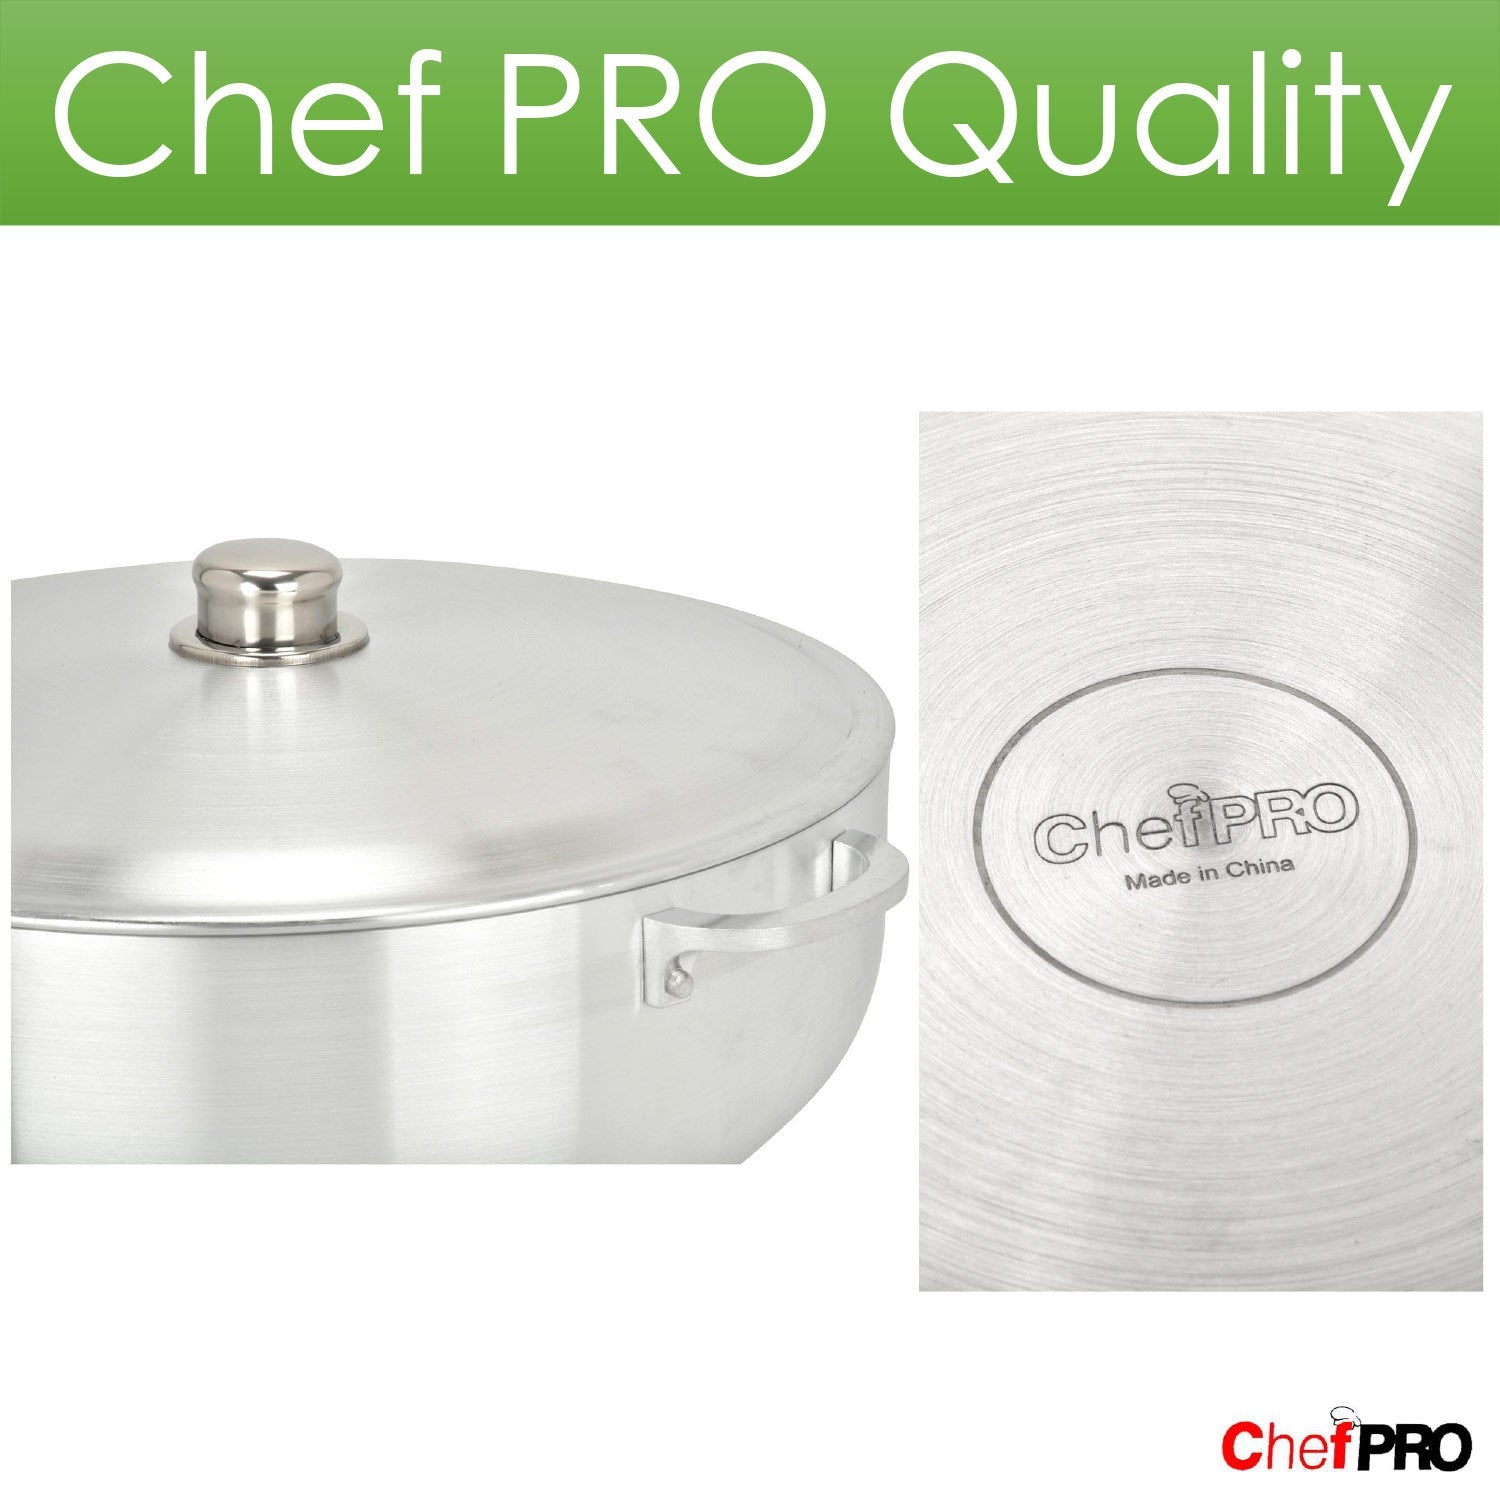 Chef PRO Commercial Grade Aluminum Caldero Stock Pot, 1.9 Quarts